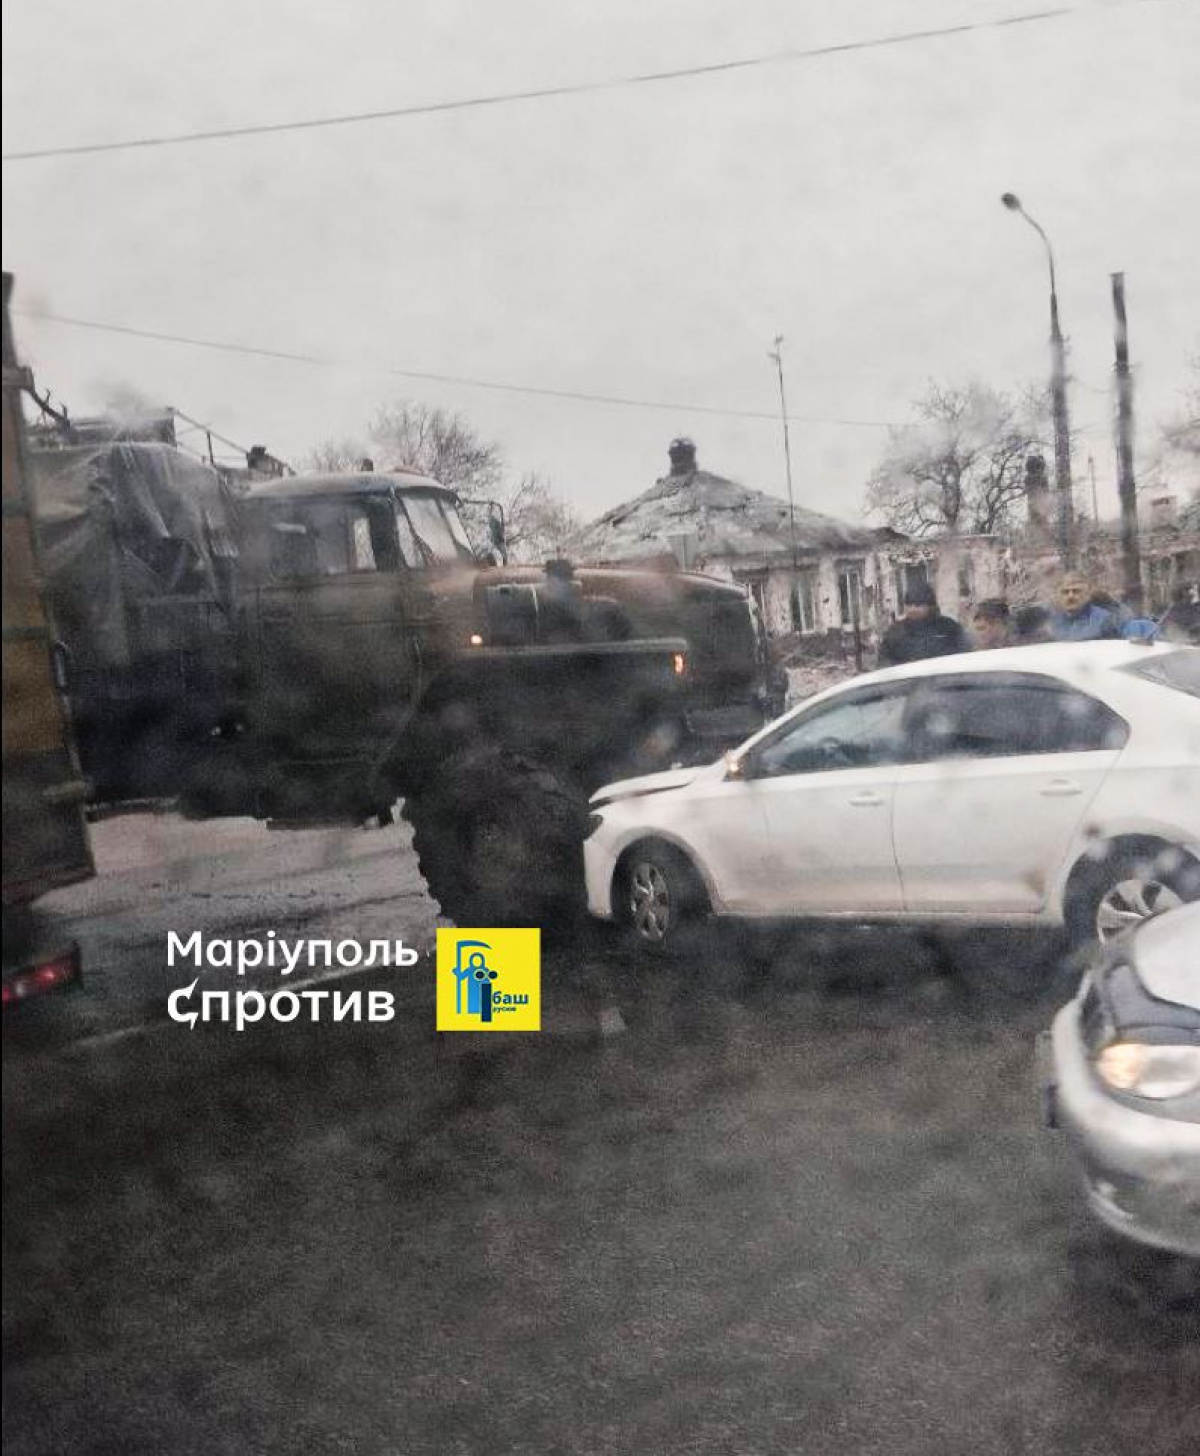 В оккупированном Мариуполе грузовик с боекомплектом врезался в легковой автомобиль. Фото: Петр Андрющенко/Тelegram